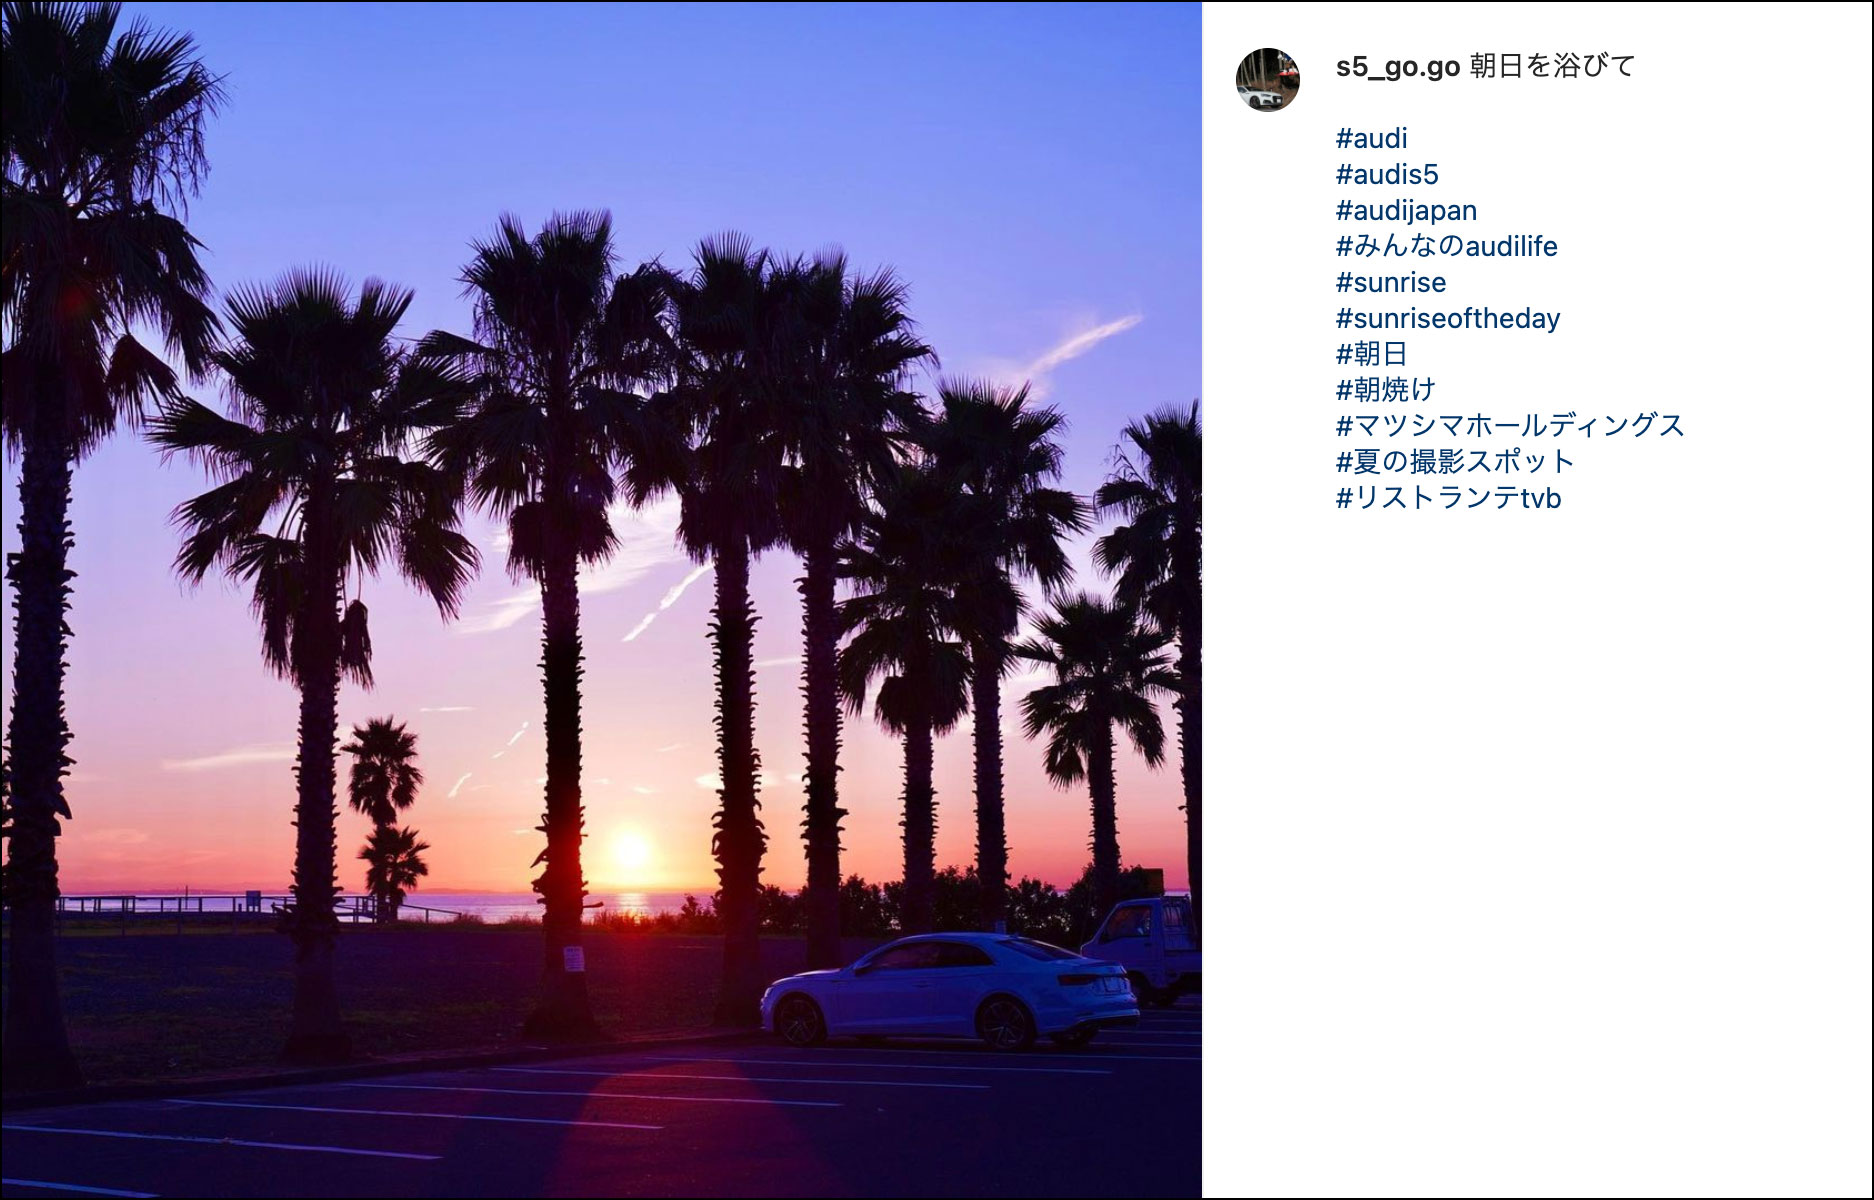 クルマで行きたい「#夏の撮影スポット」Instagramコンテスト リストランテt.v.b賞